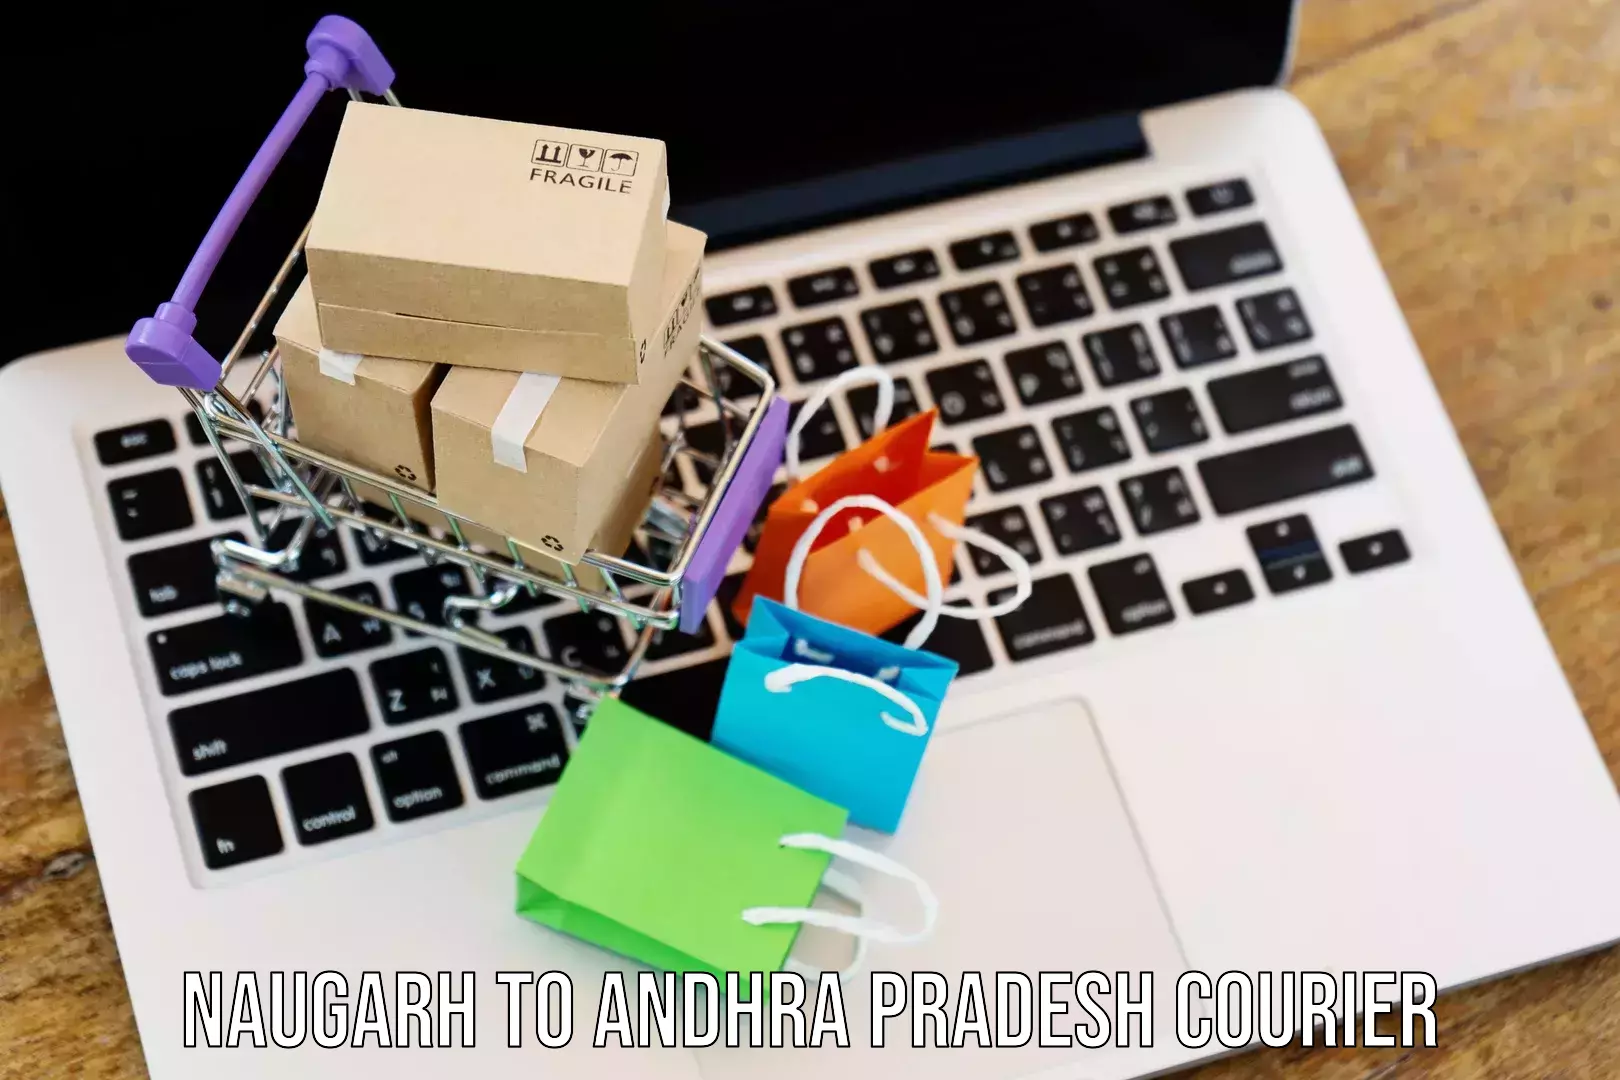 On-call courier service Naugarh to Andhra Pradesh